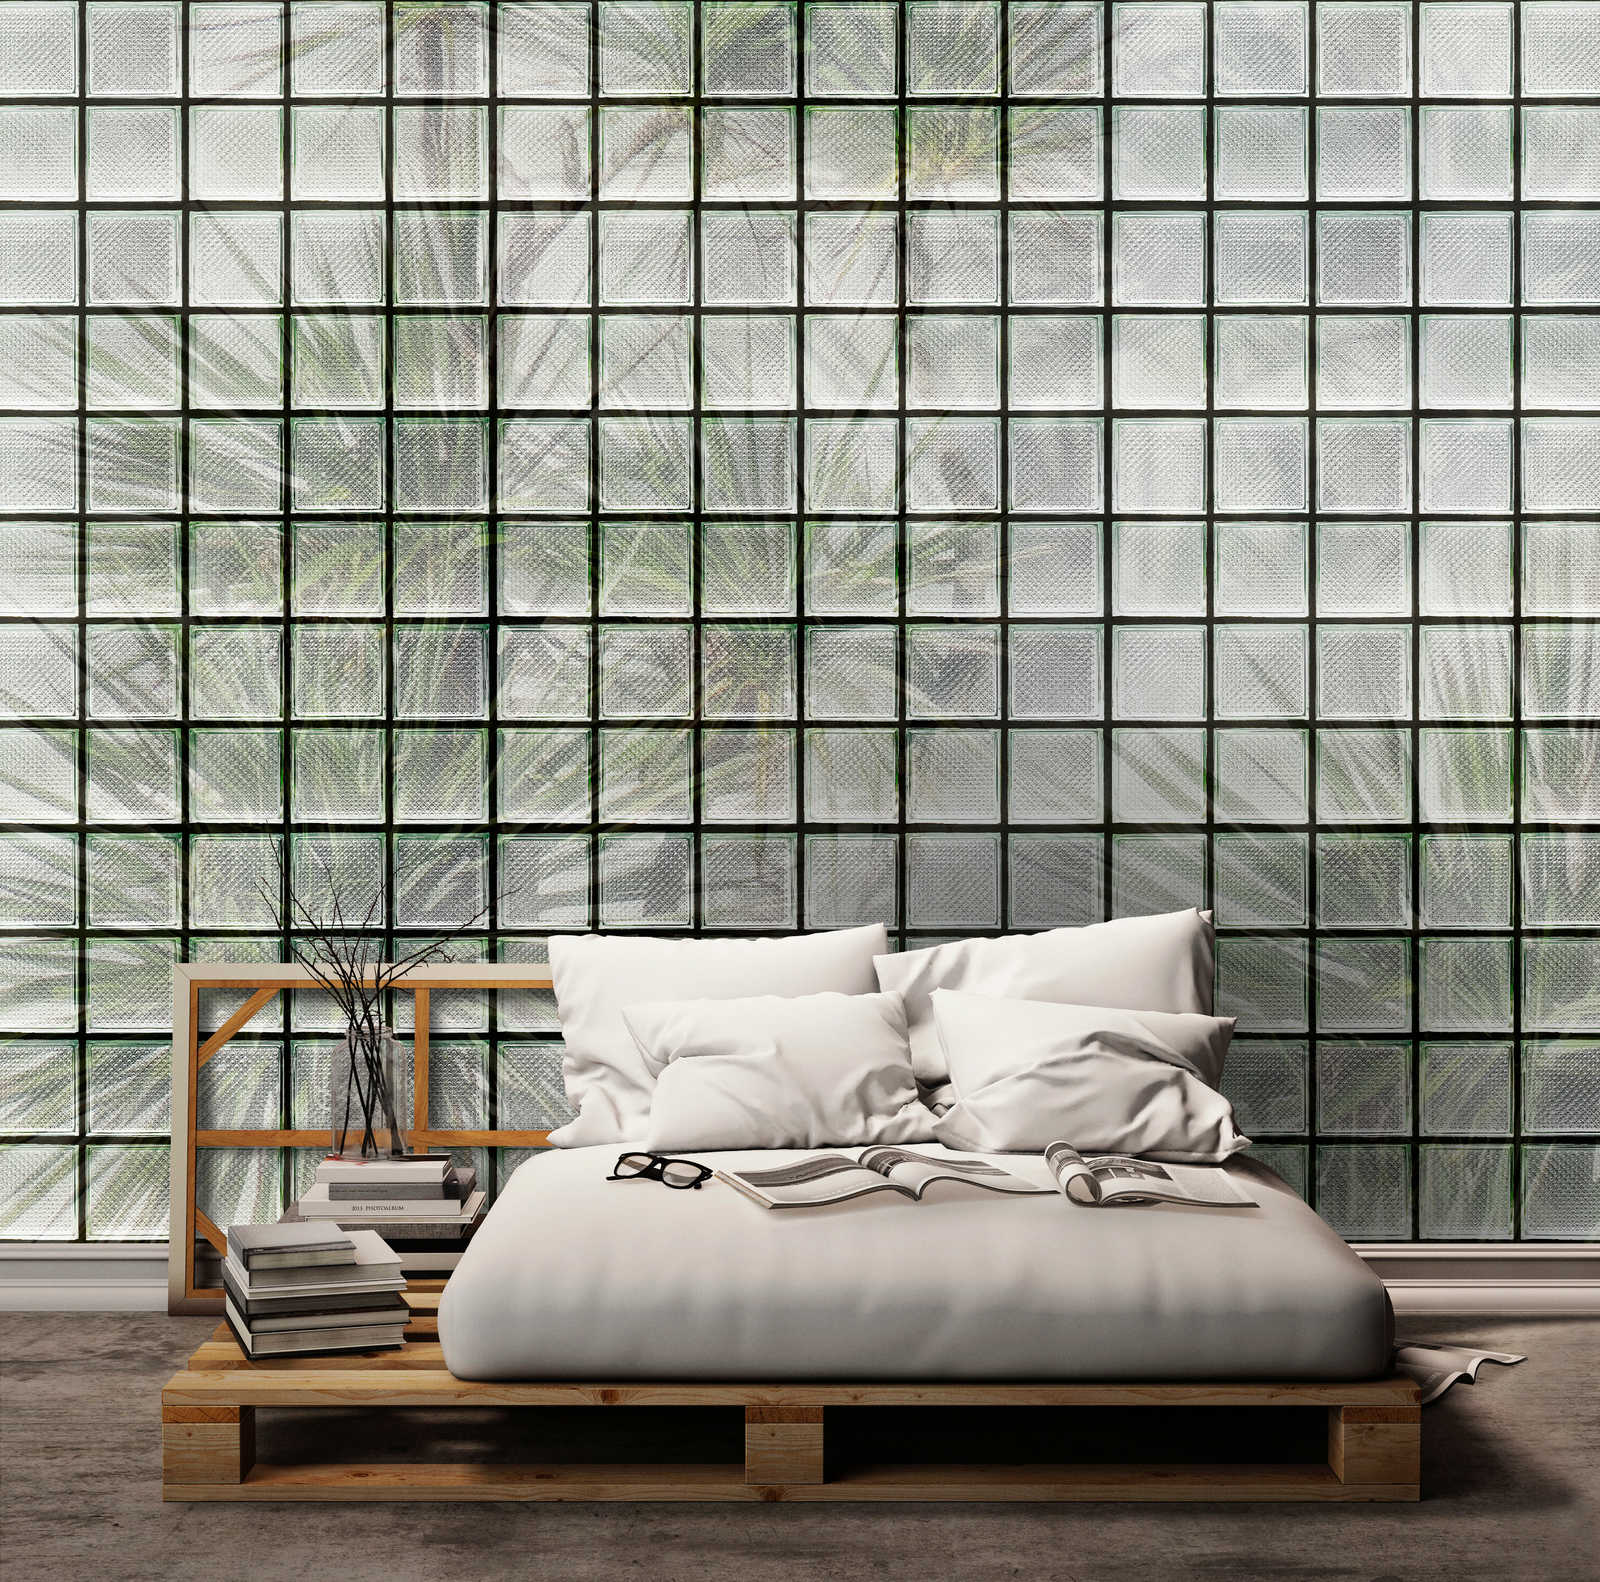             Green House 1 - Papier peint panoramique palmiers & briques de verre
        